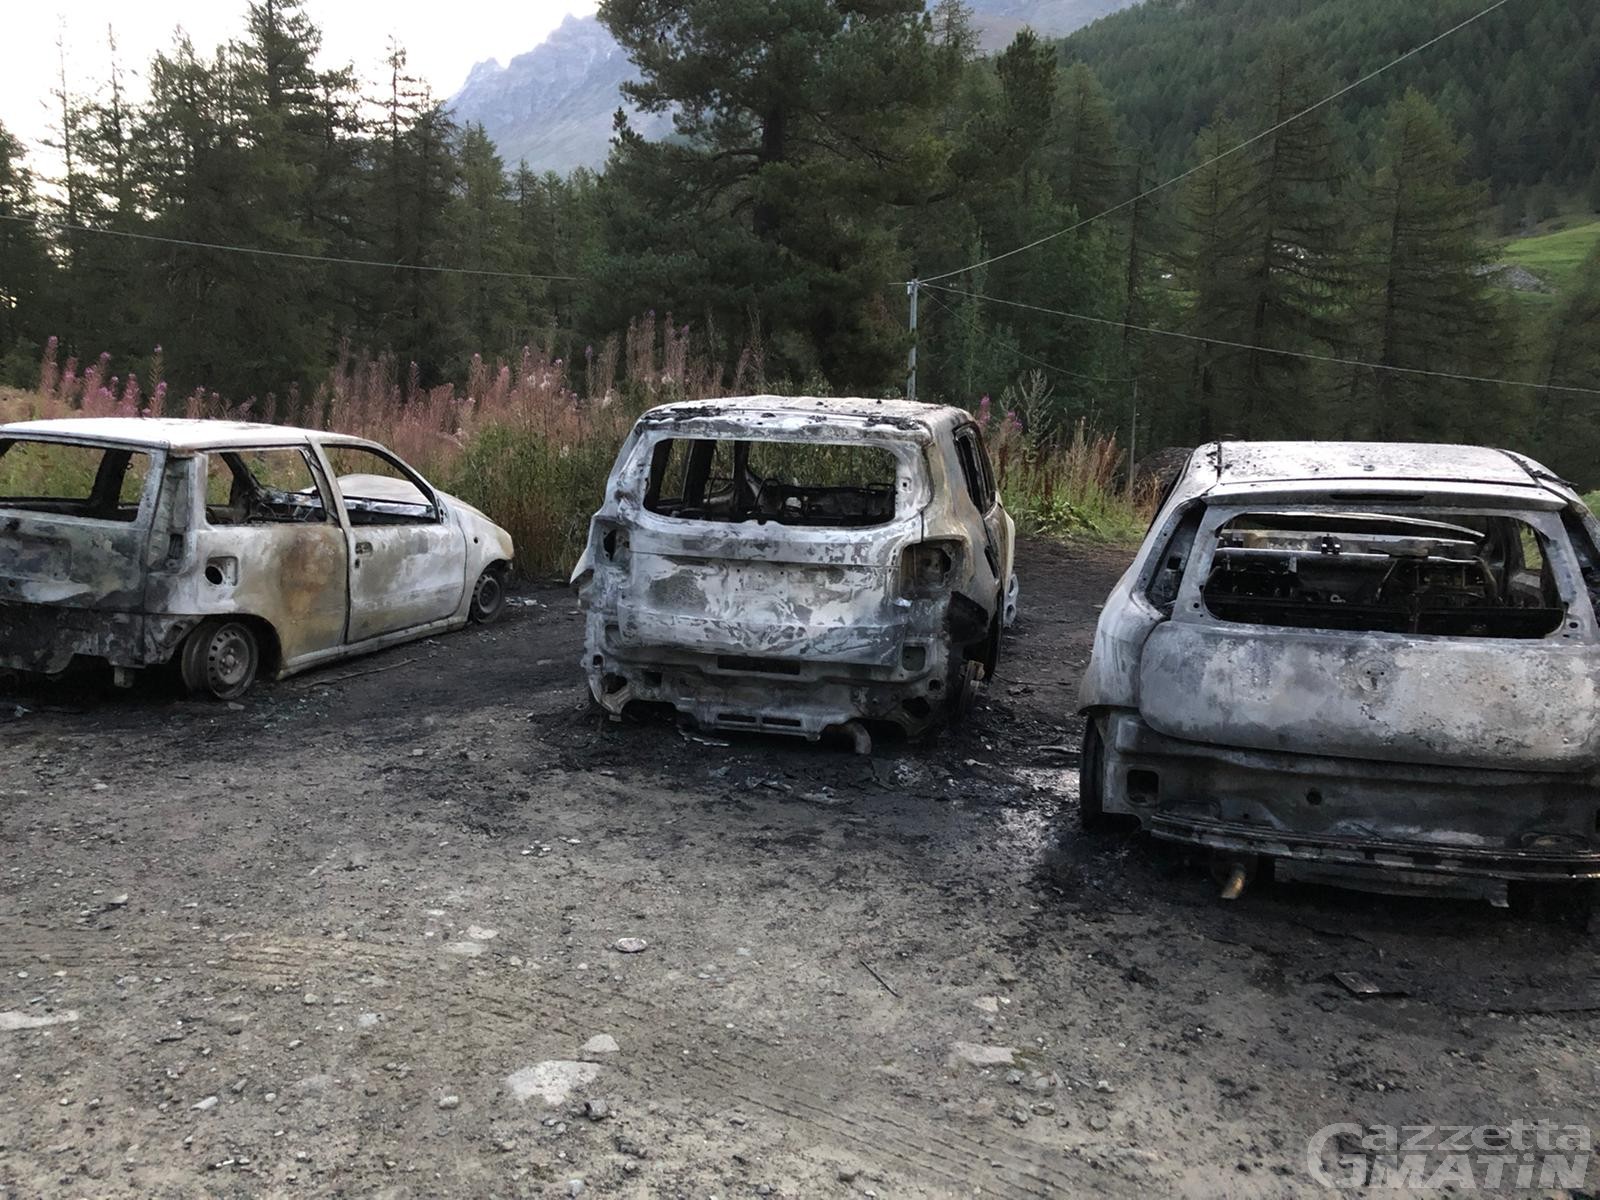 Rhemes-Notre-Dame: rogo nella notte, 3 auto distrutte dalle fiamme